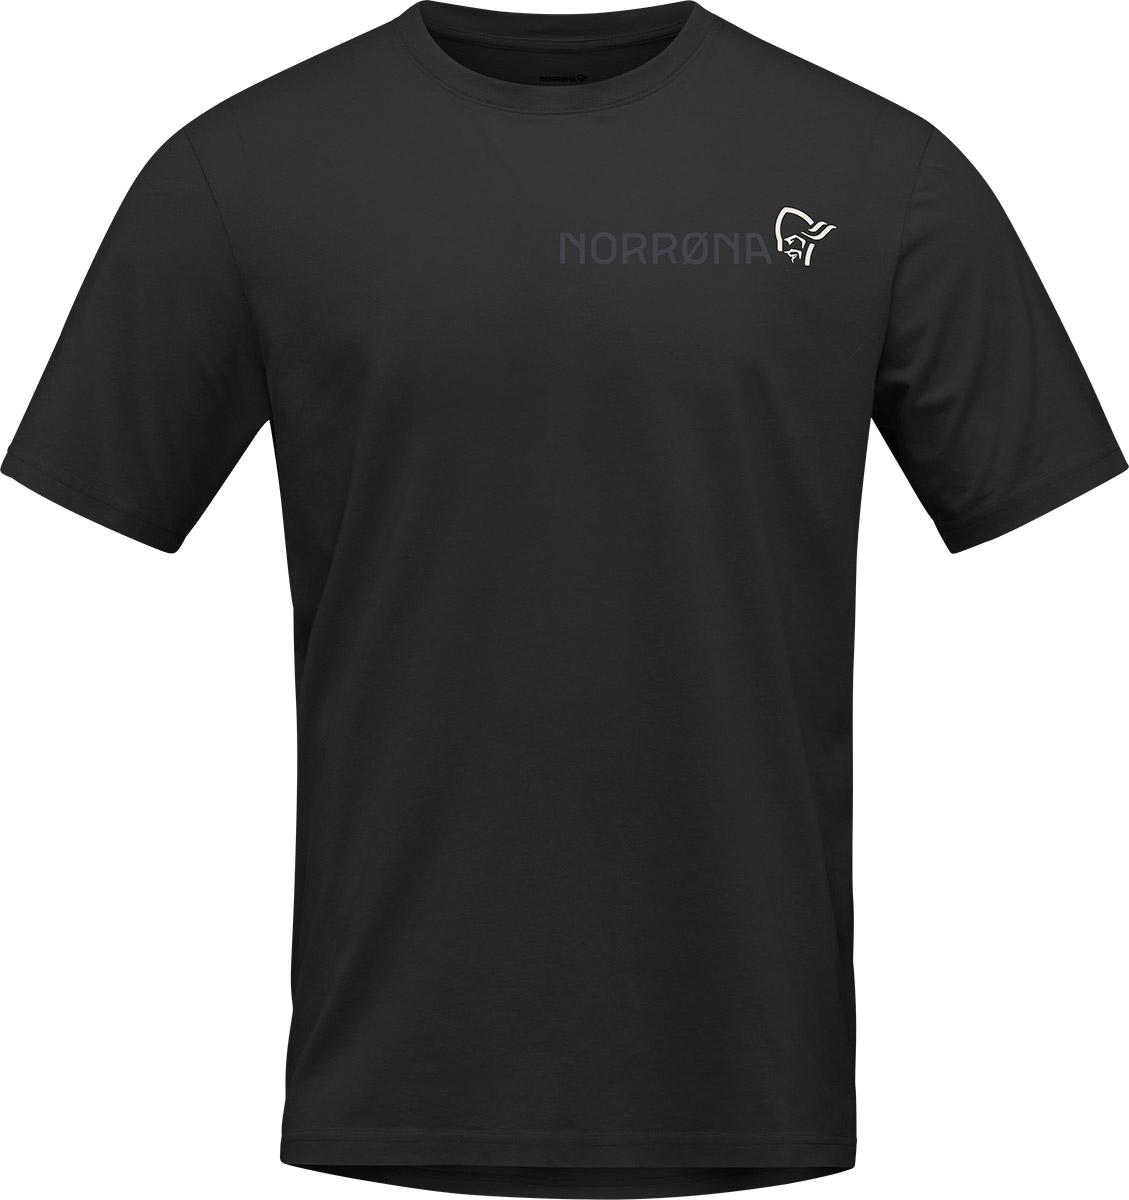 Norrna /29 Cotton Duotone T-shirt - Caviar